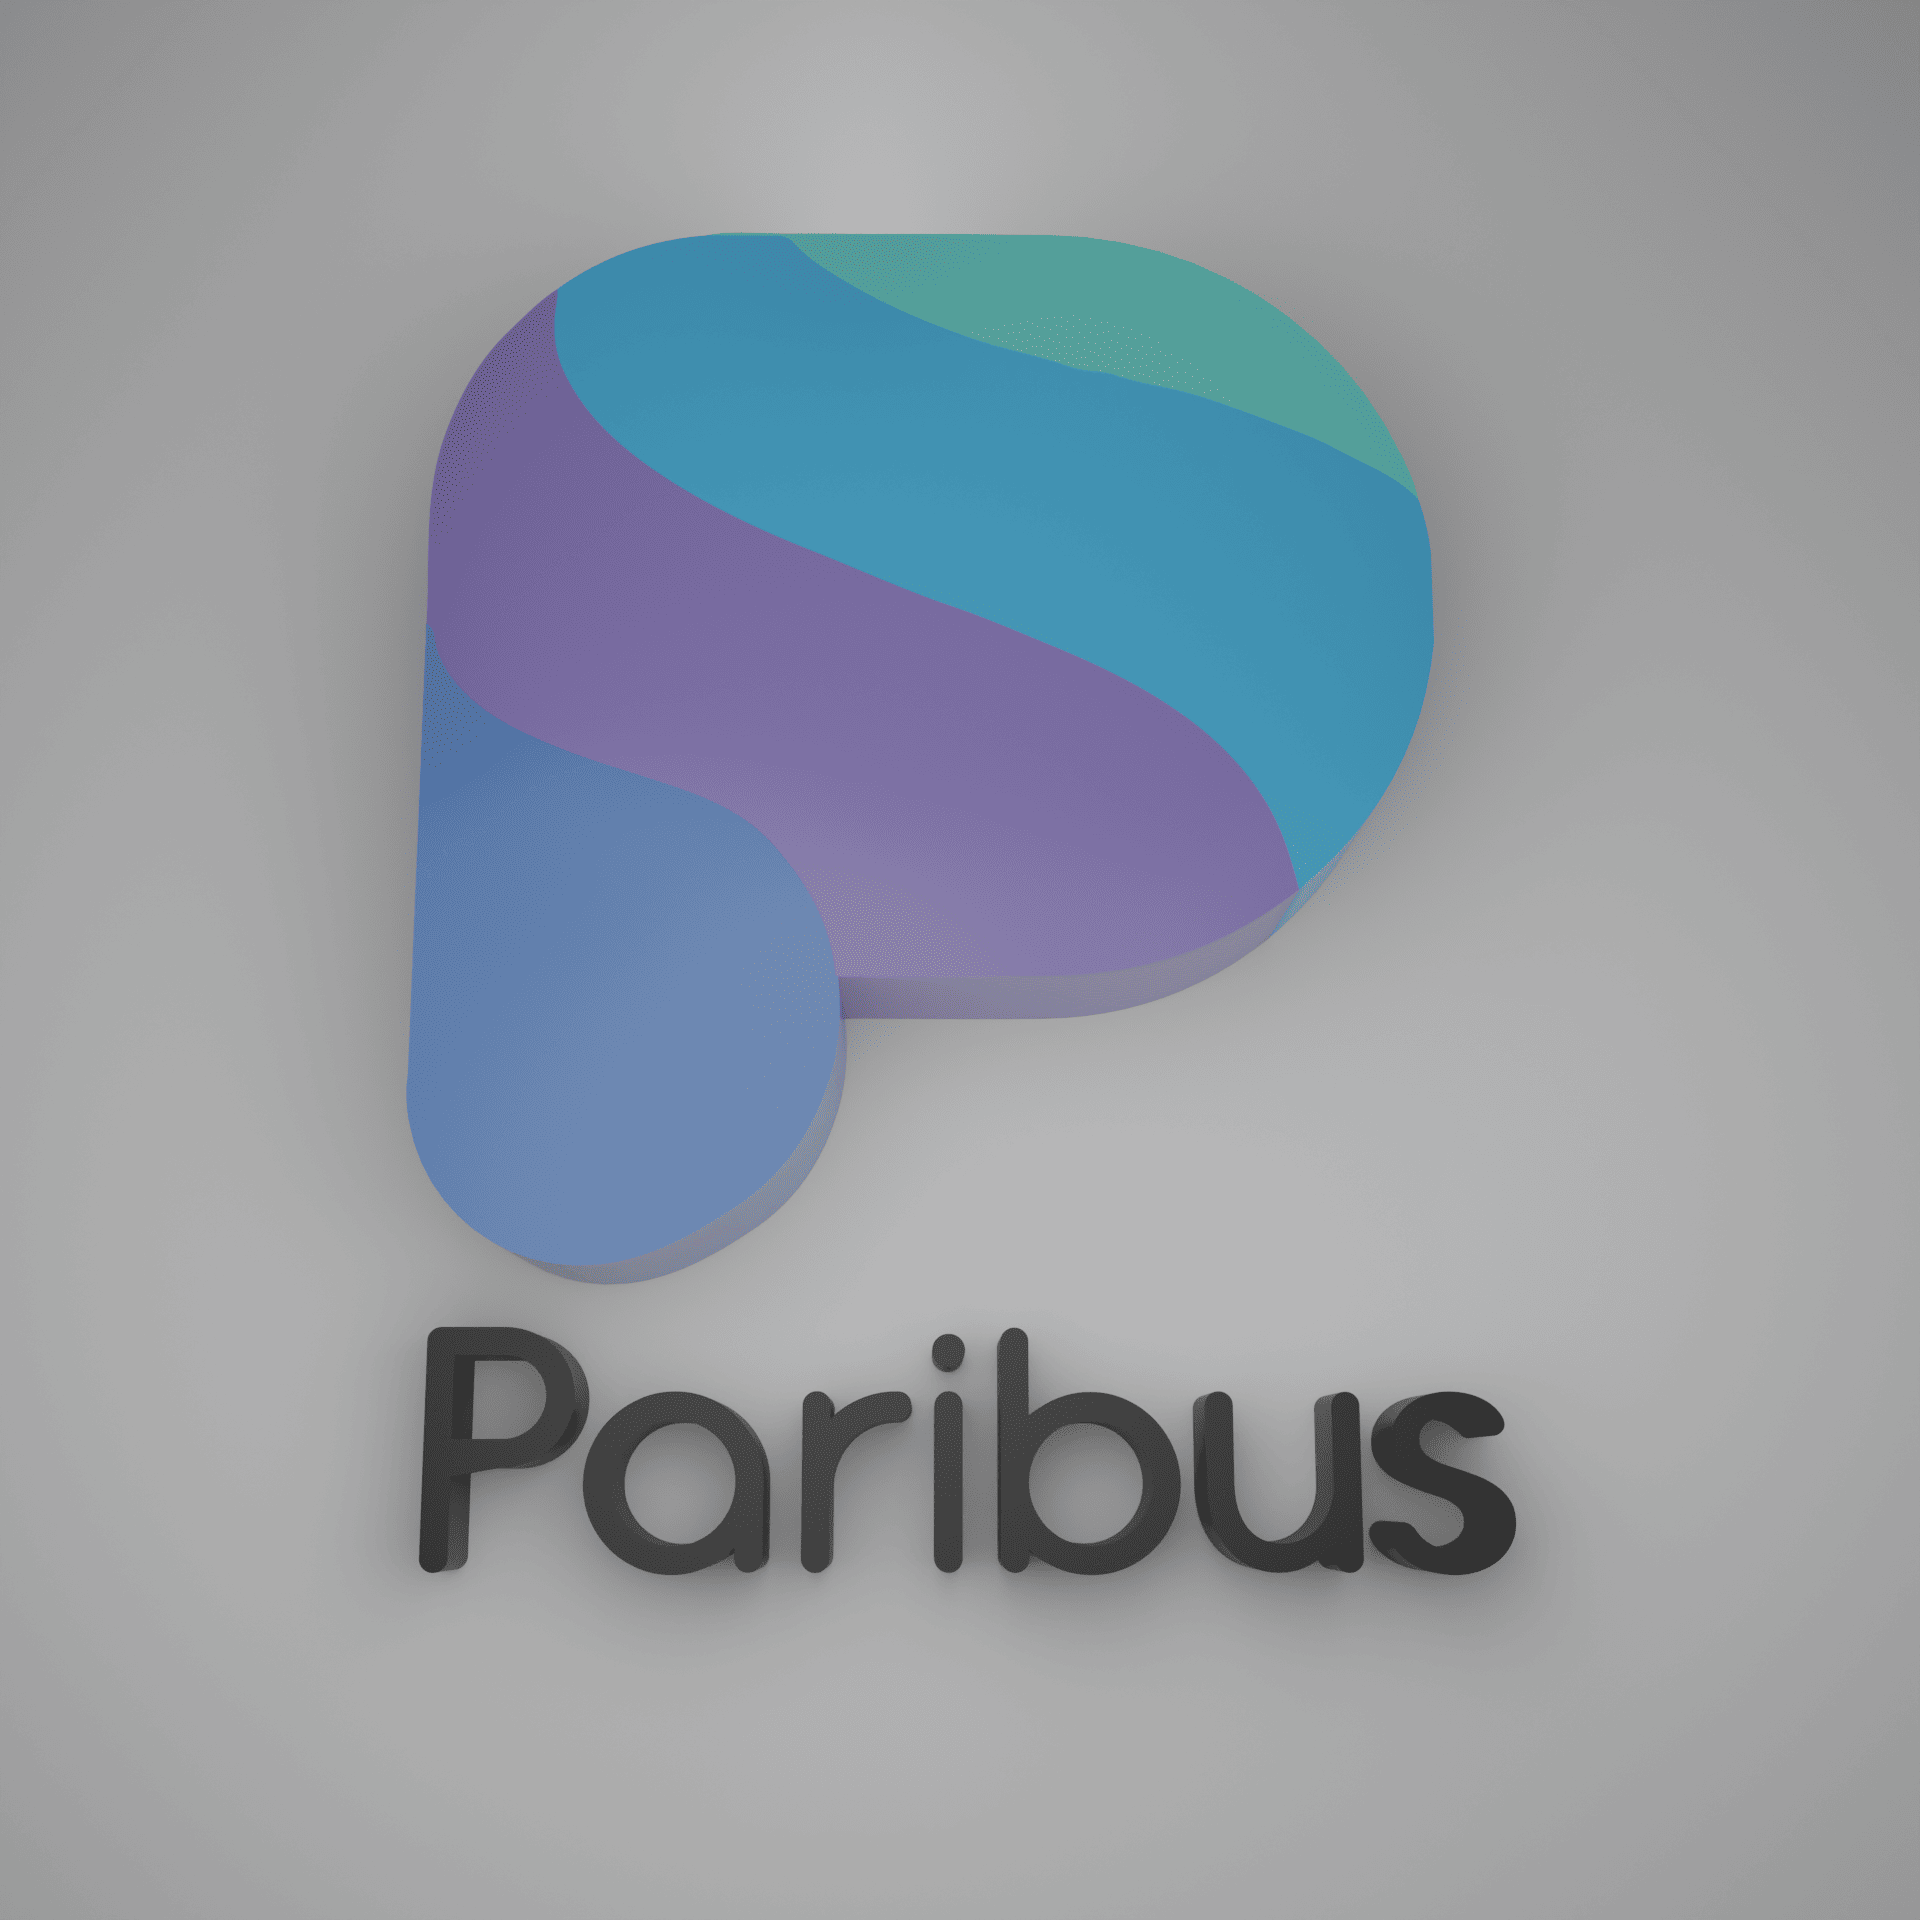 Paribus